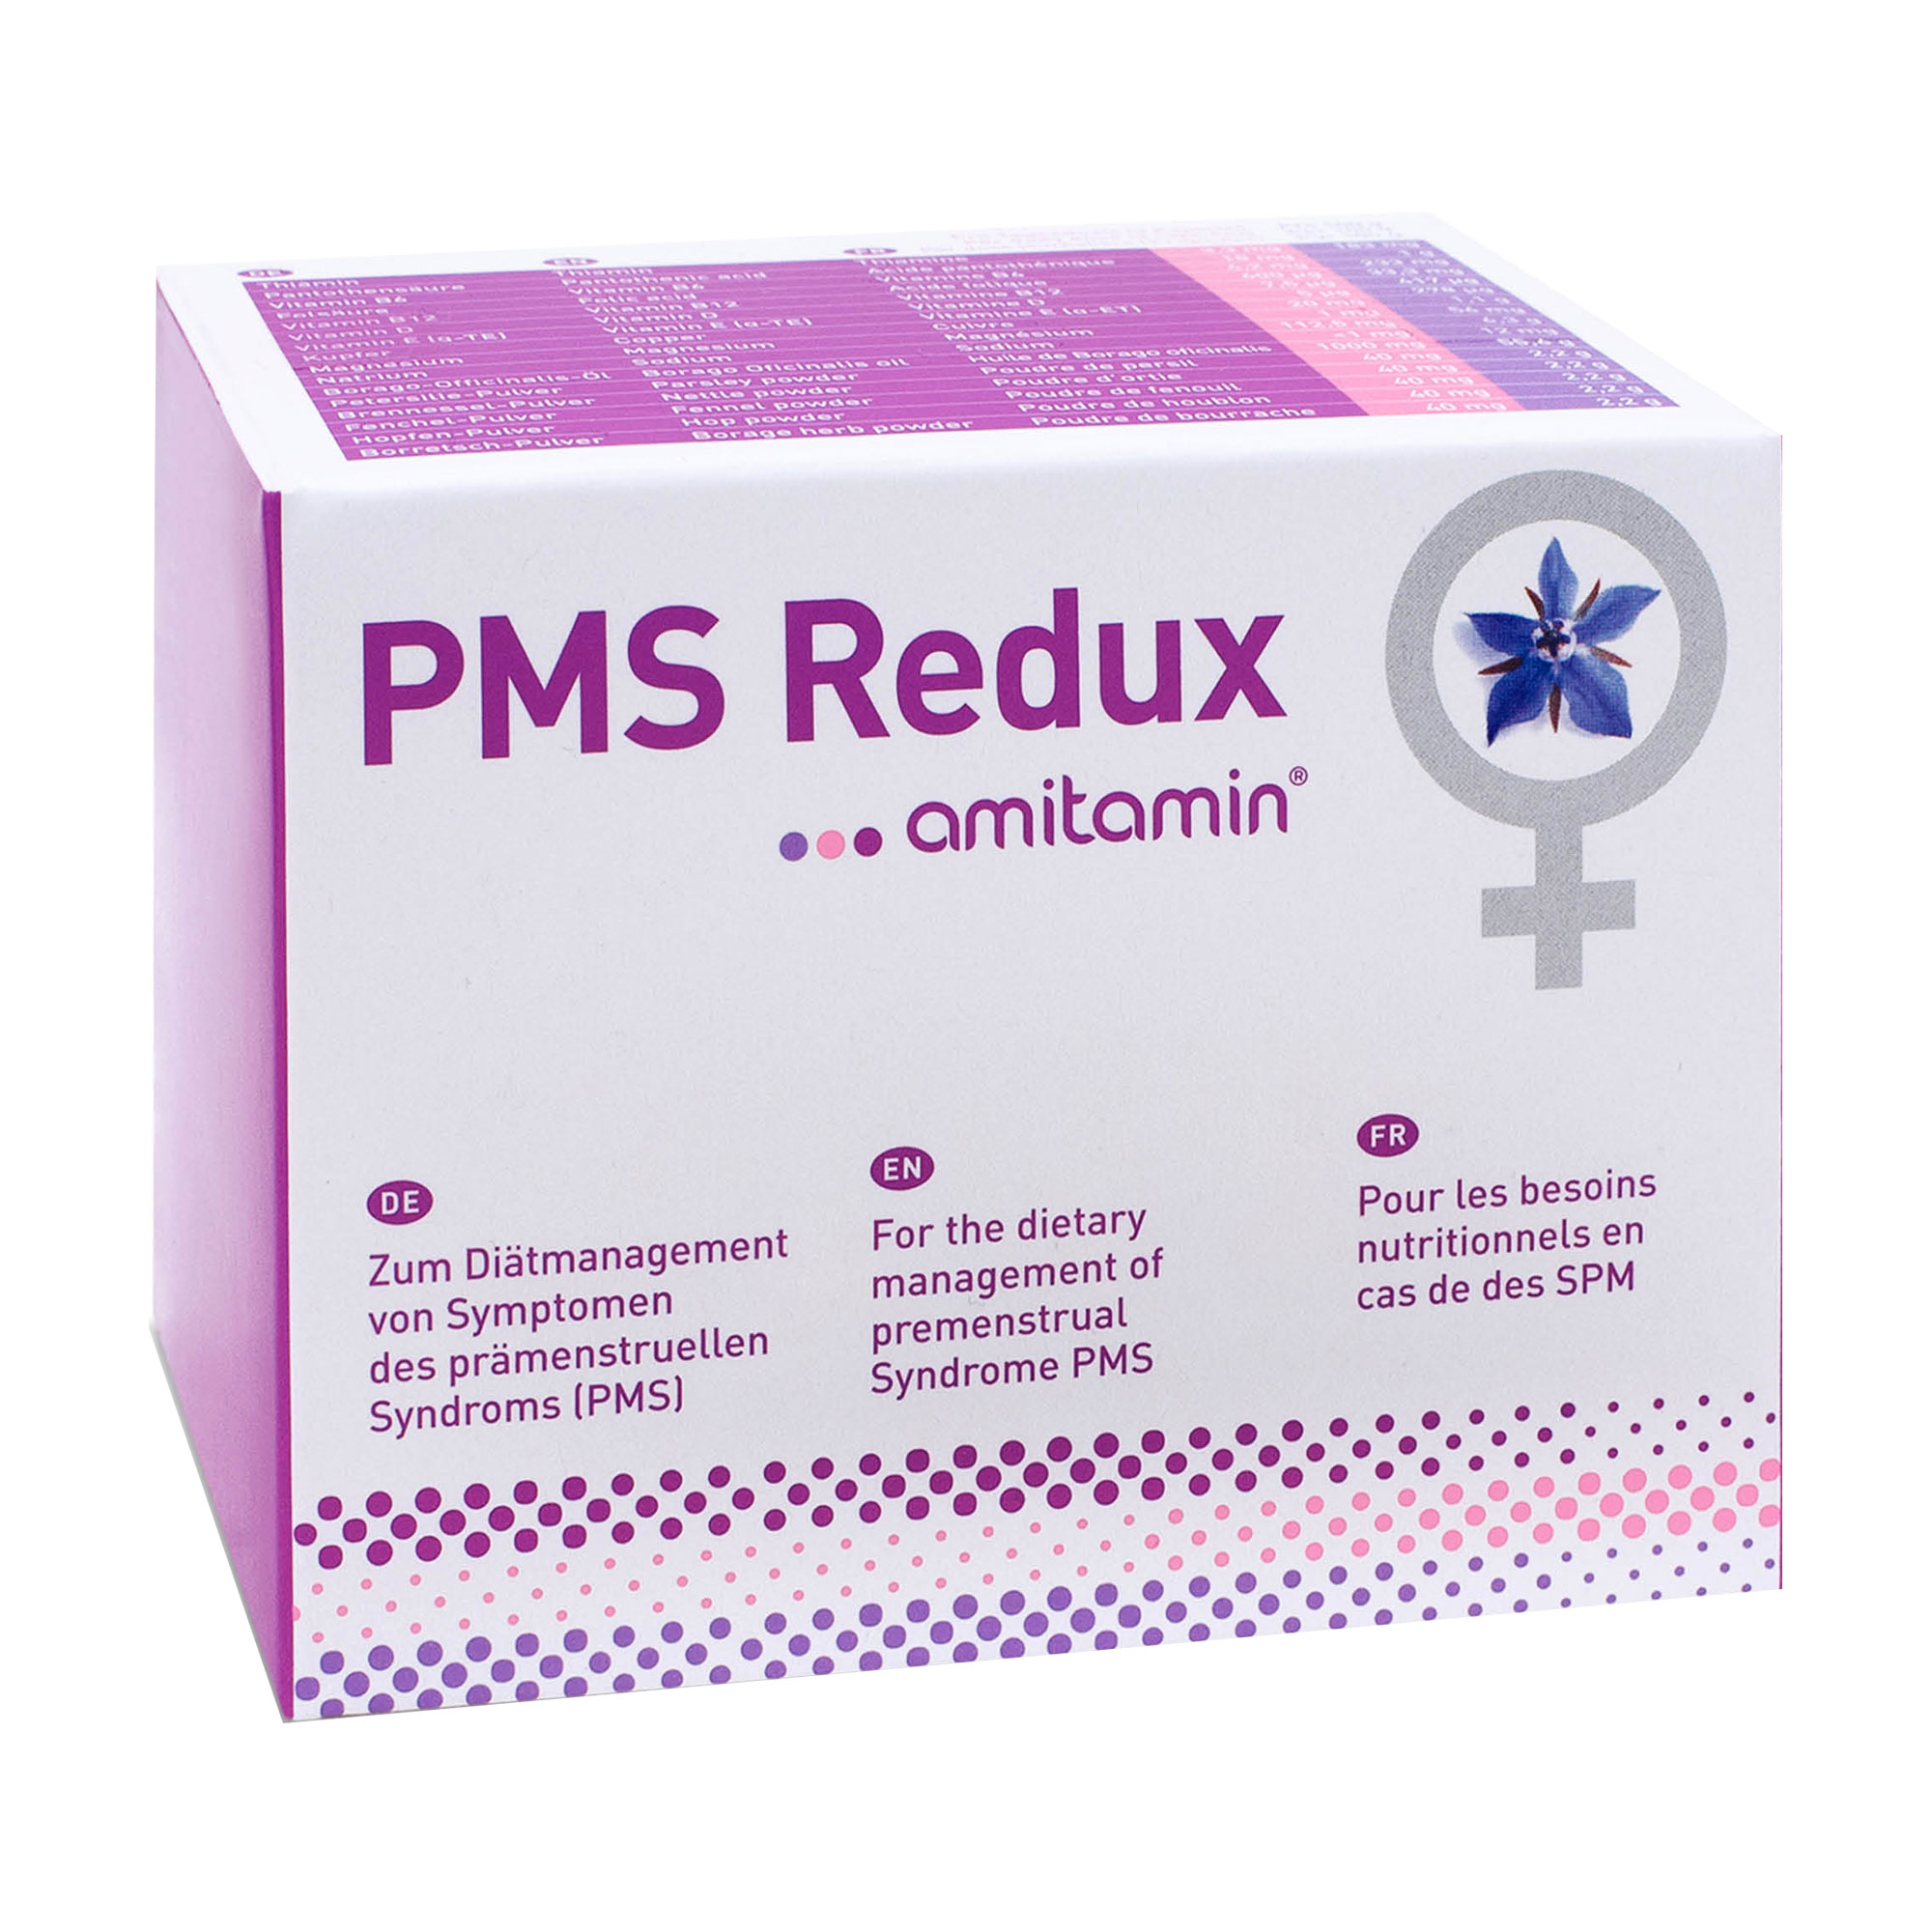 Zum Diätmanagement von Symptomen des prämenstruellen Syndroms (PMS).